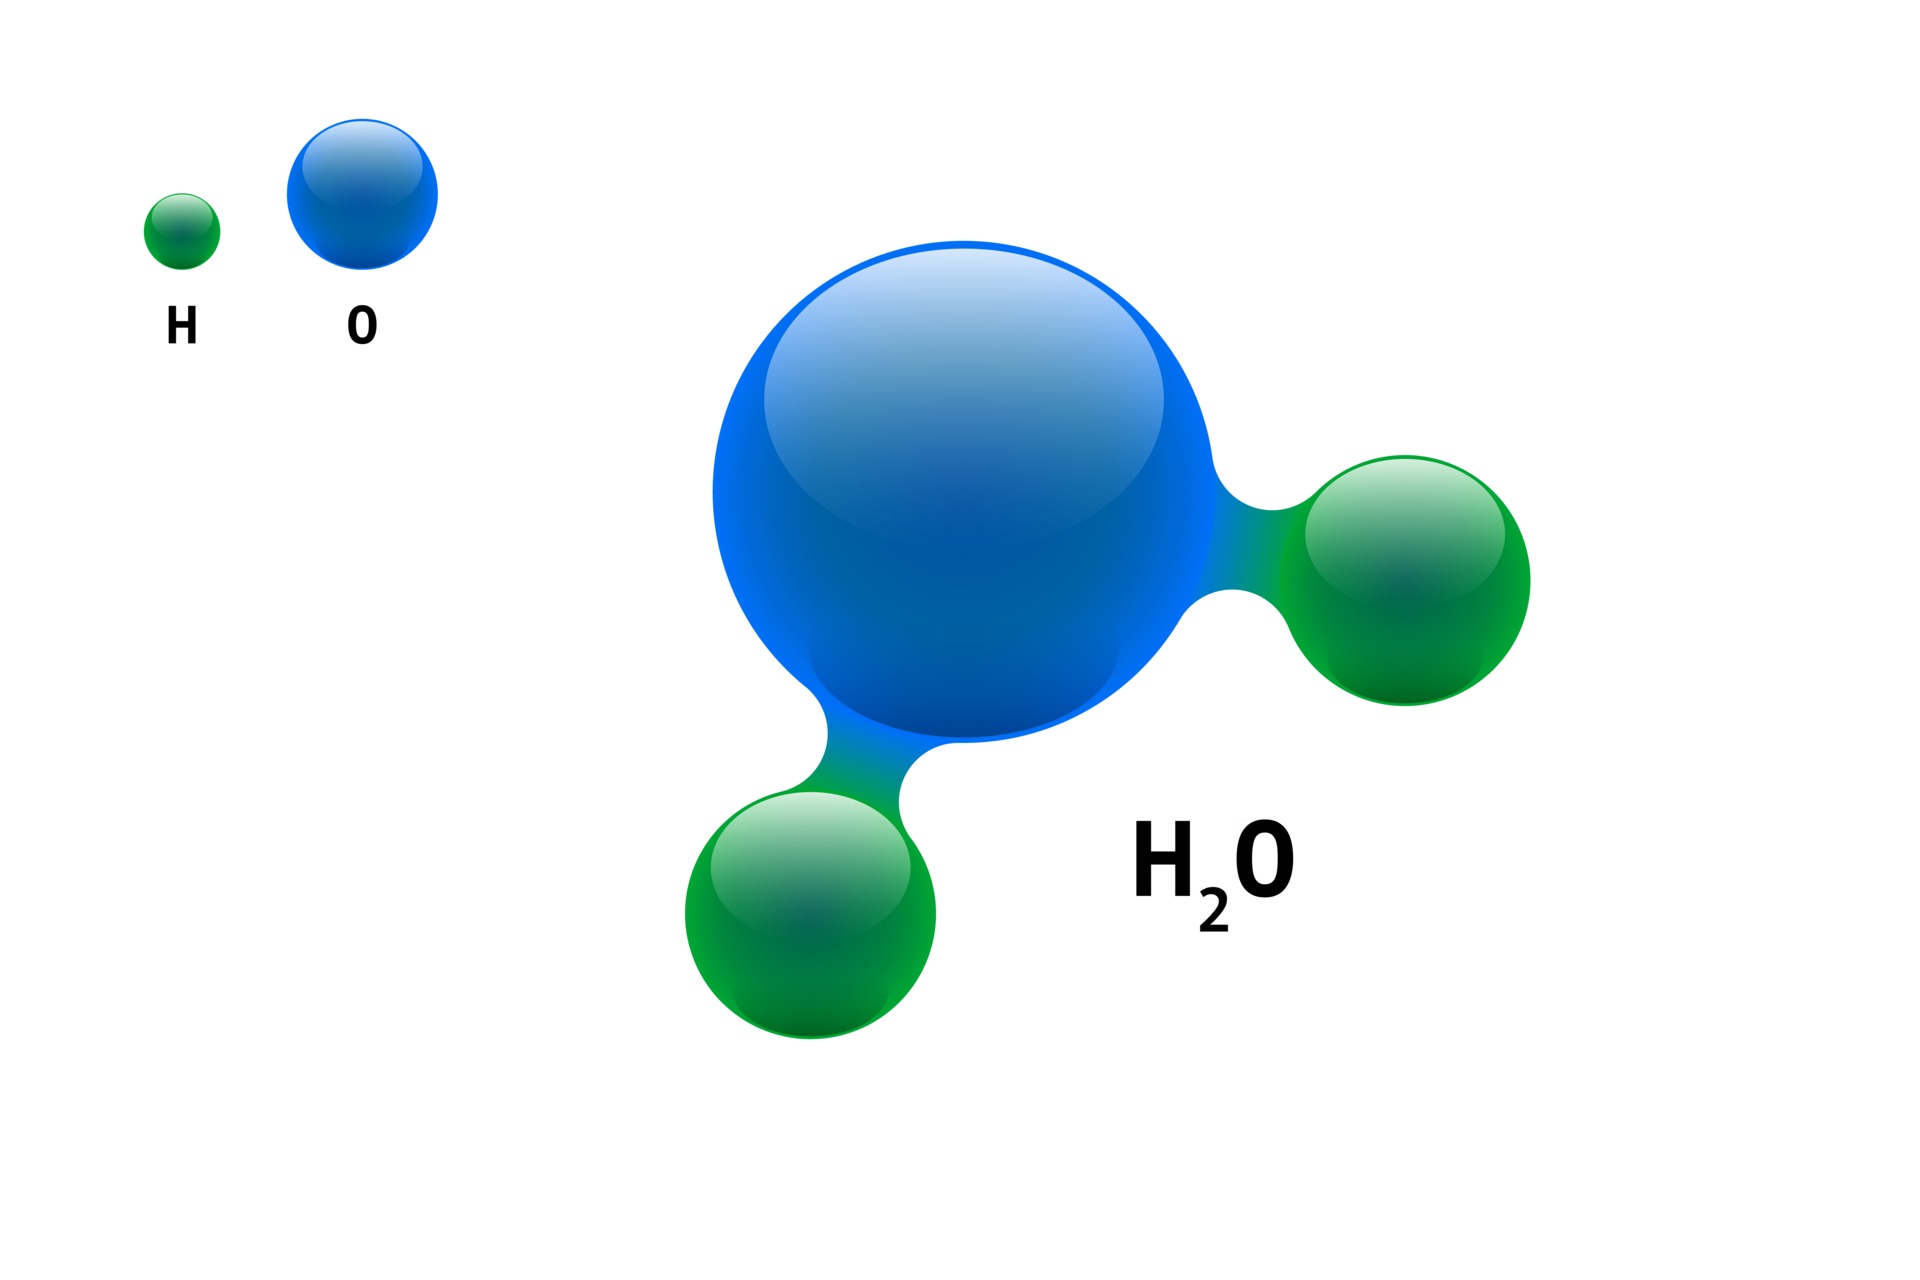 modelo de química molécula agua h2o fórmula de elemento científico.  Partículas integradas inorgánicas naturales constituidas por estructura  molecular 3d. dos esferas aisladas de vector de átomo de volumen de  hidrógeno y oxígeno